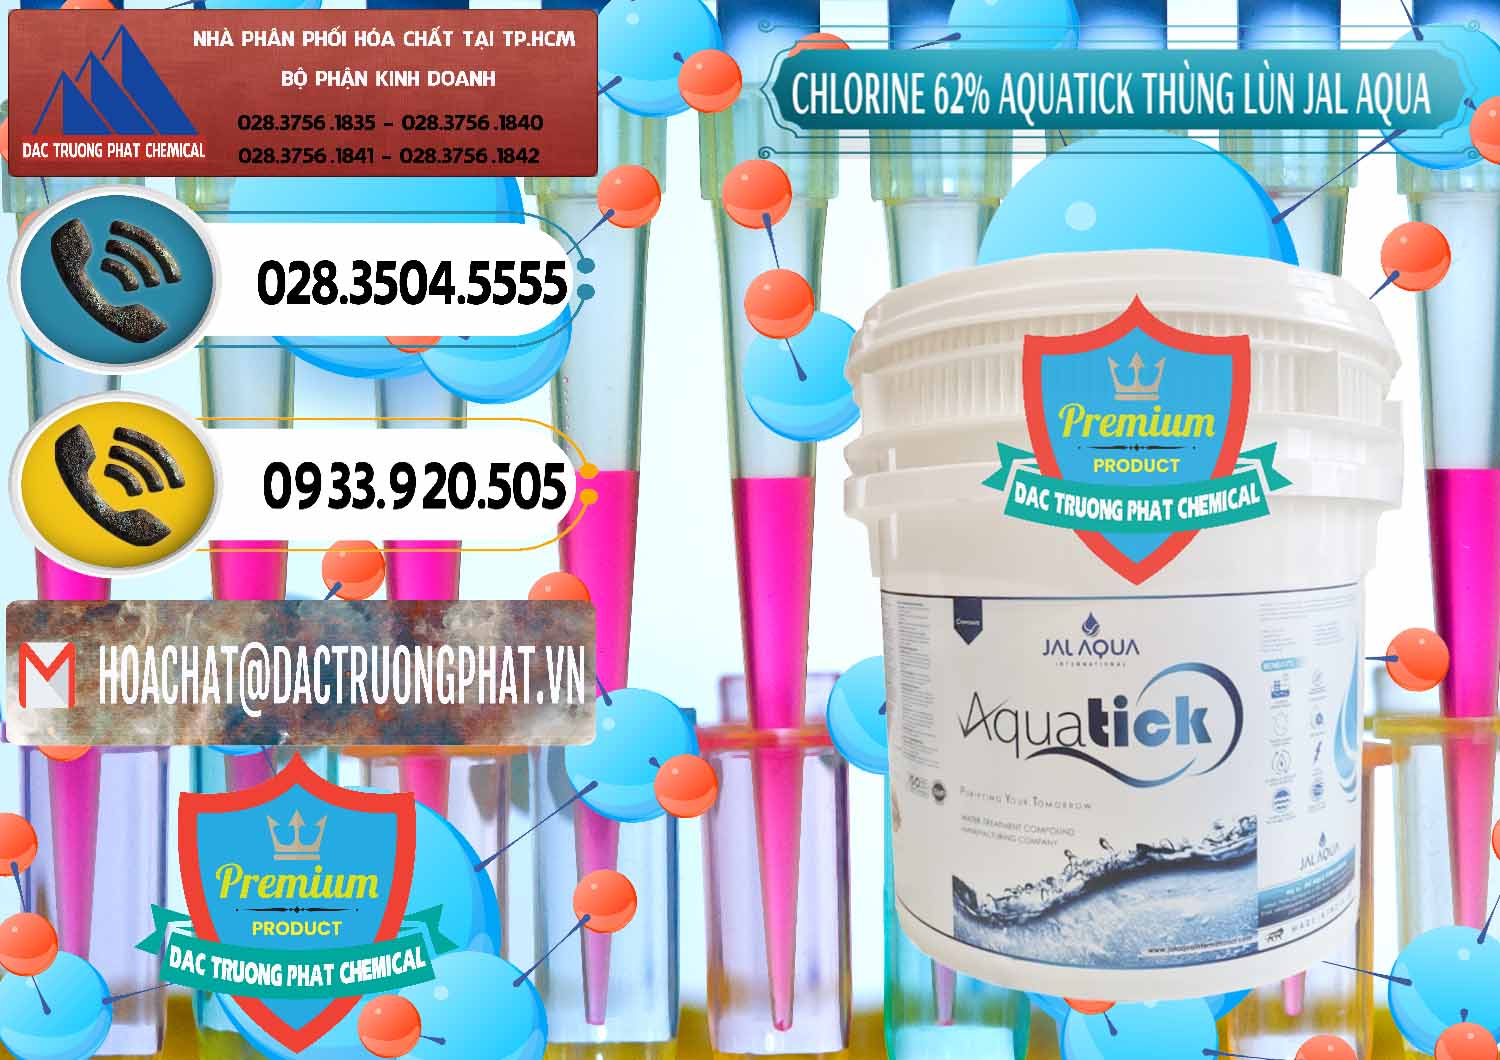 Đơn vị chuyên bán ( cung cấp ) Chlorine – Clorin 62% Aquatick Thùng Lùn Jal Aqua Ấn Độ India - 0238 - Phân phối - cung ứng hóa chất tại TP.HCM - hoachatdetnhuom.vn